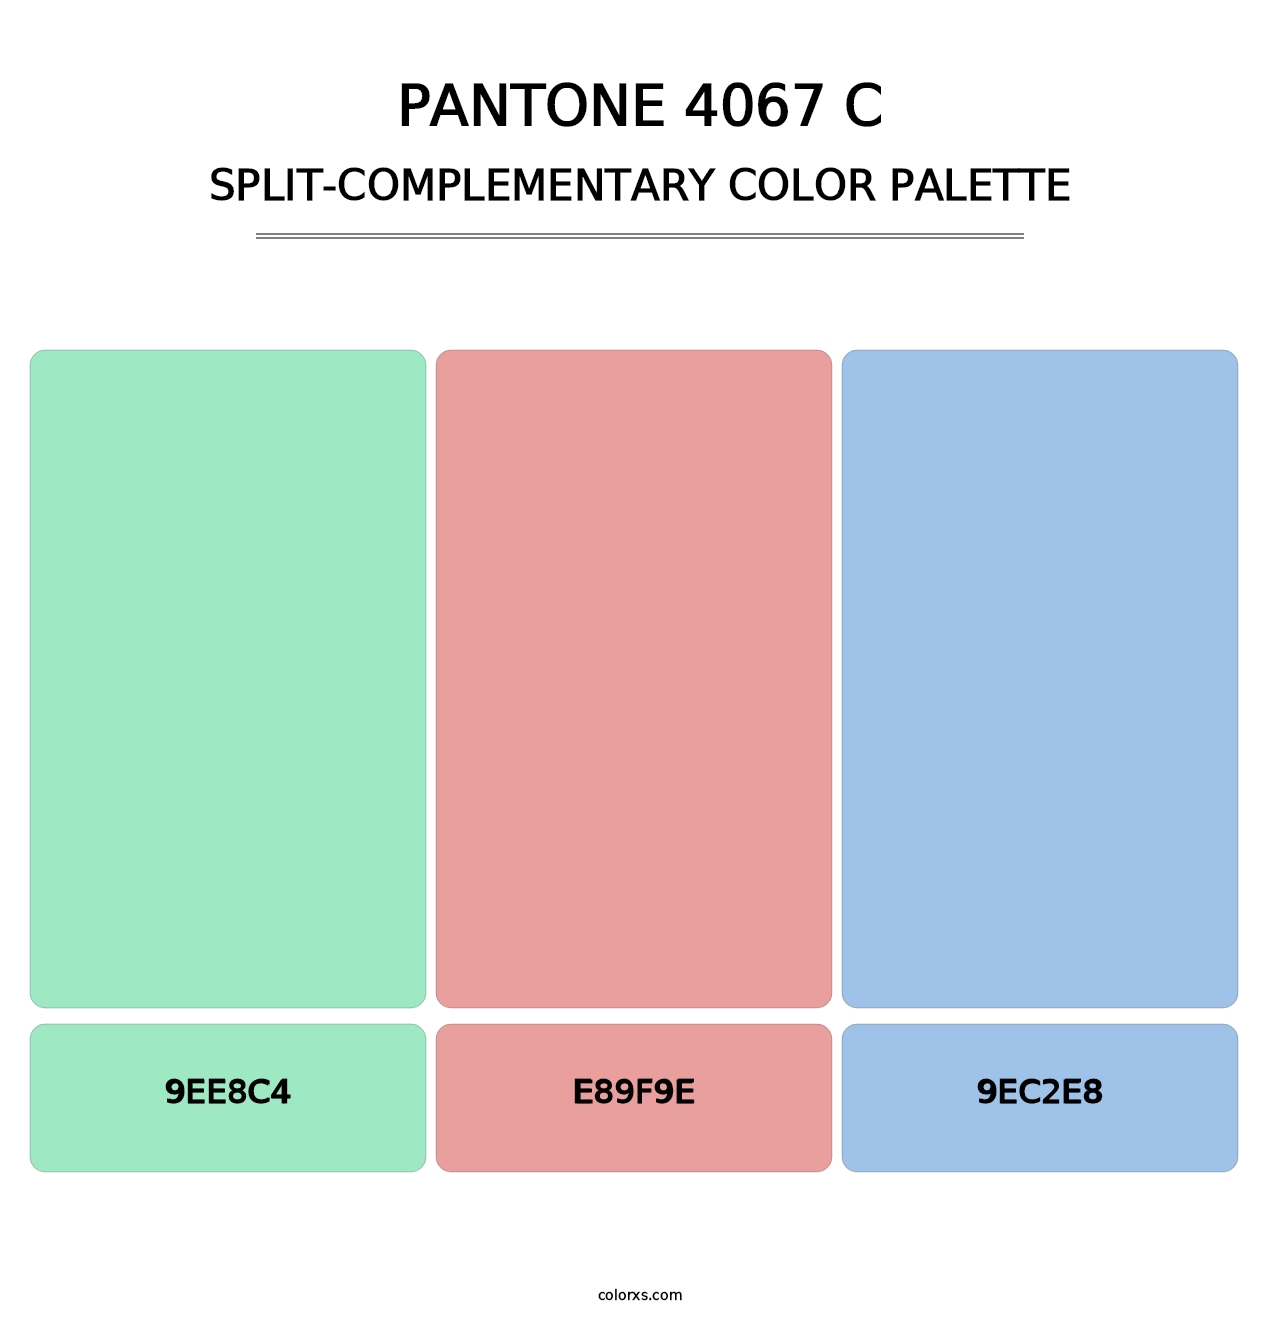 PANTONE 4067 C - Split-Complementary Color Palette